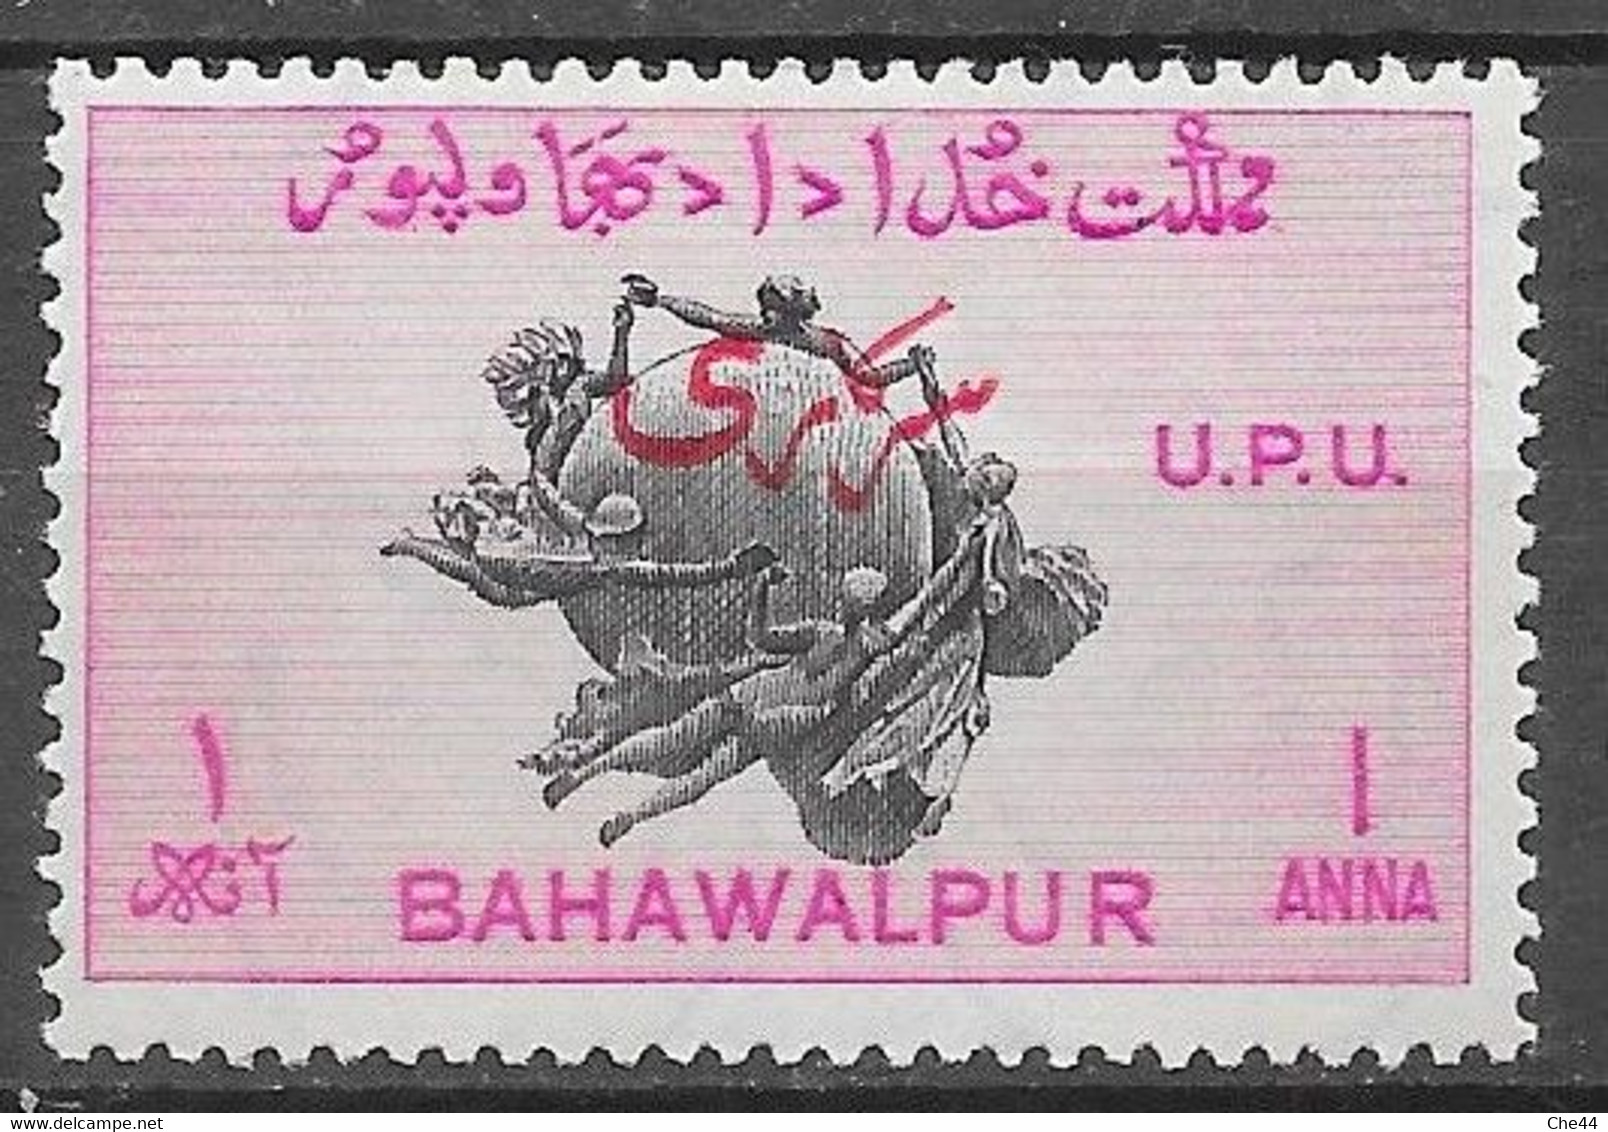 75e Anniversaire De L'Union Postale Universelle (U.P.U.) : Timbre De Service : N°26 Chez YT. - Bahawalpur